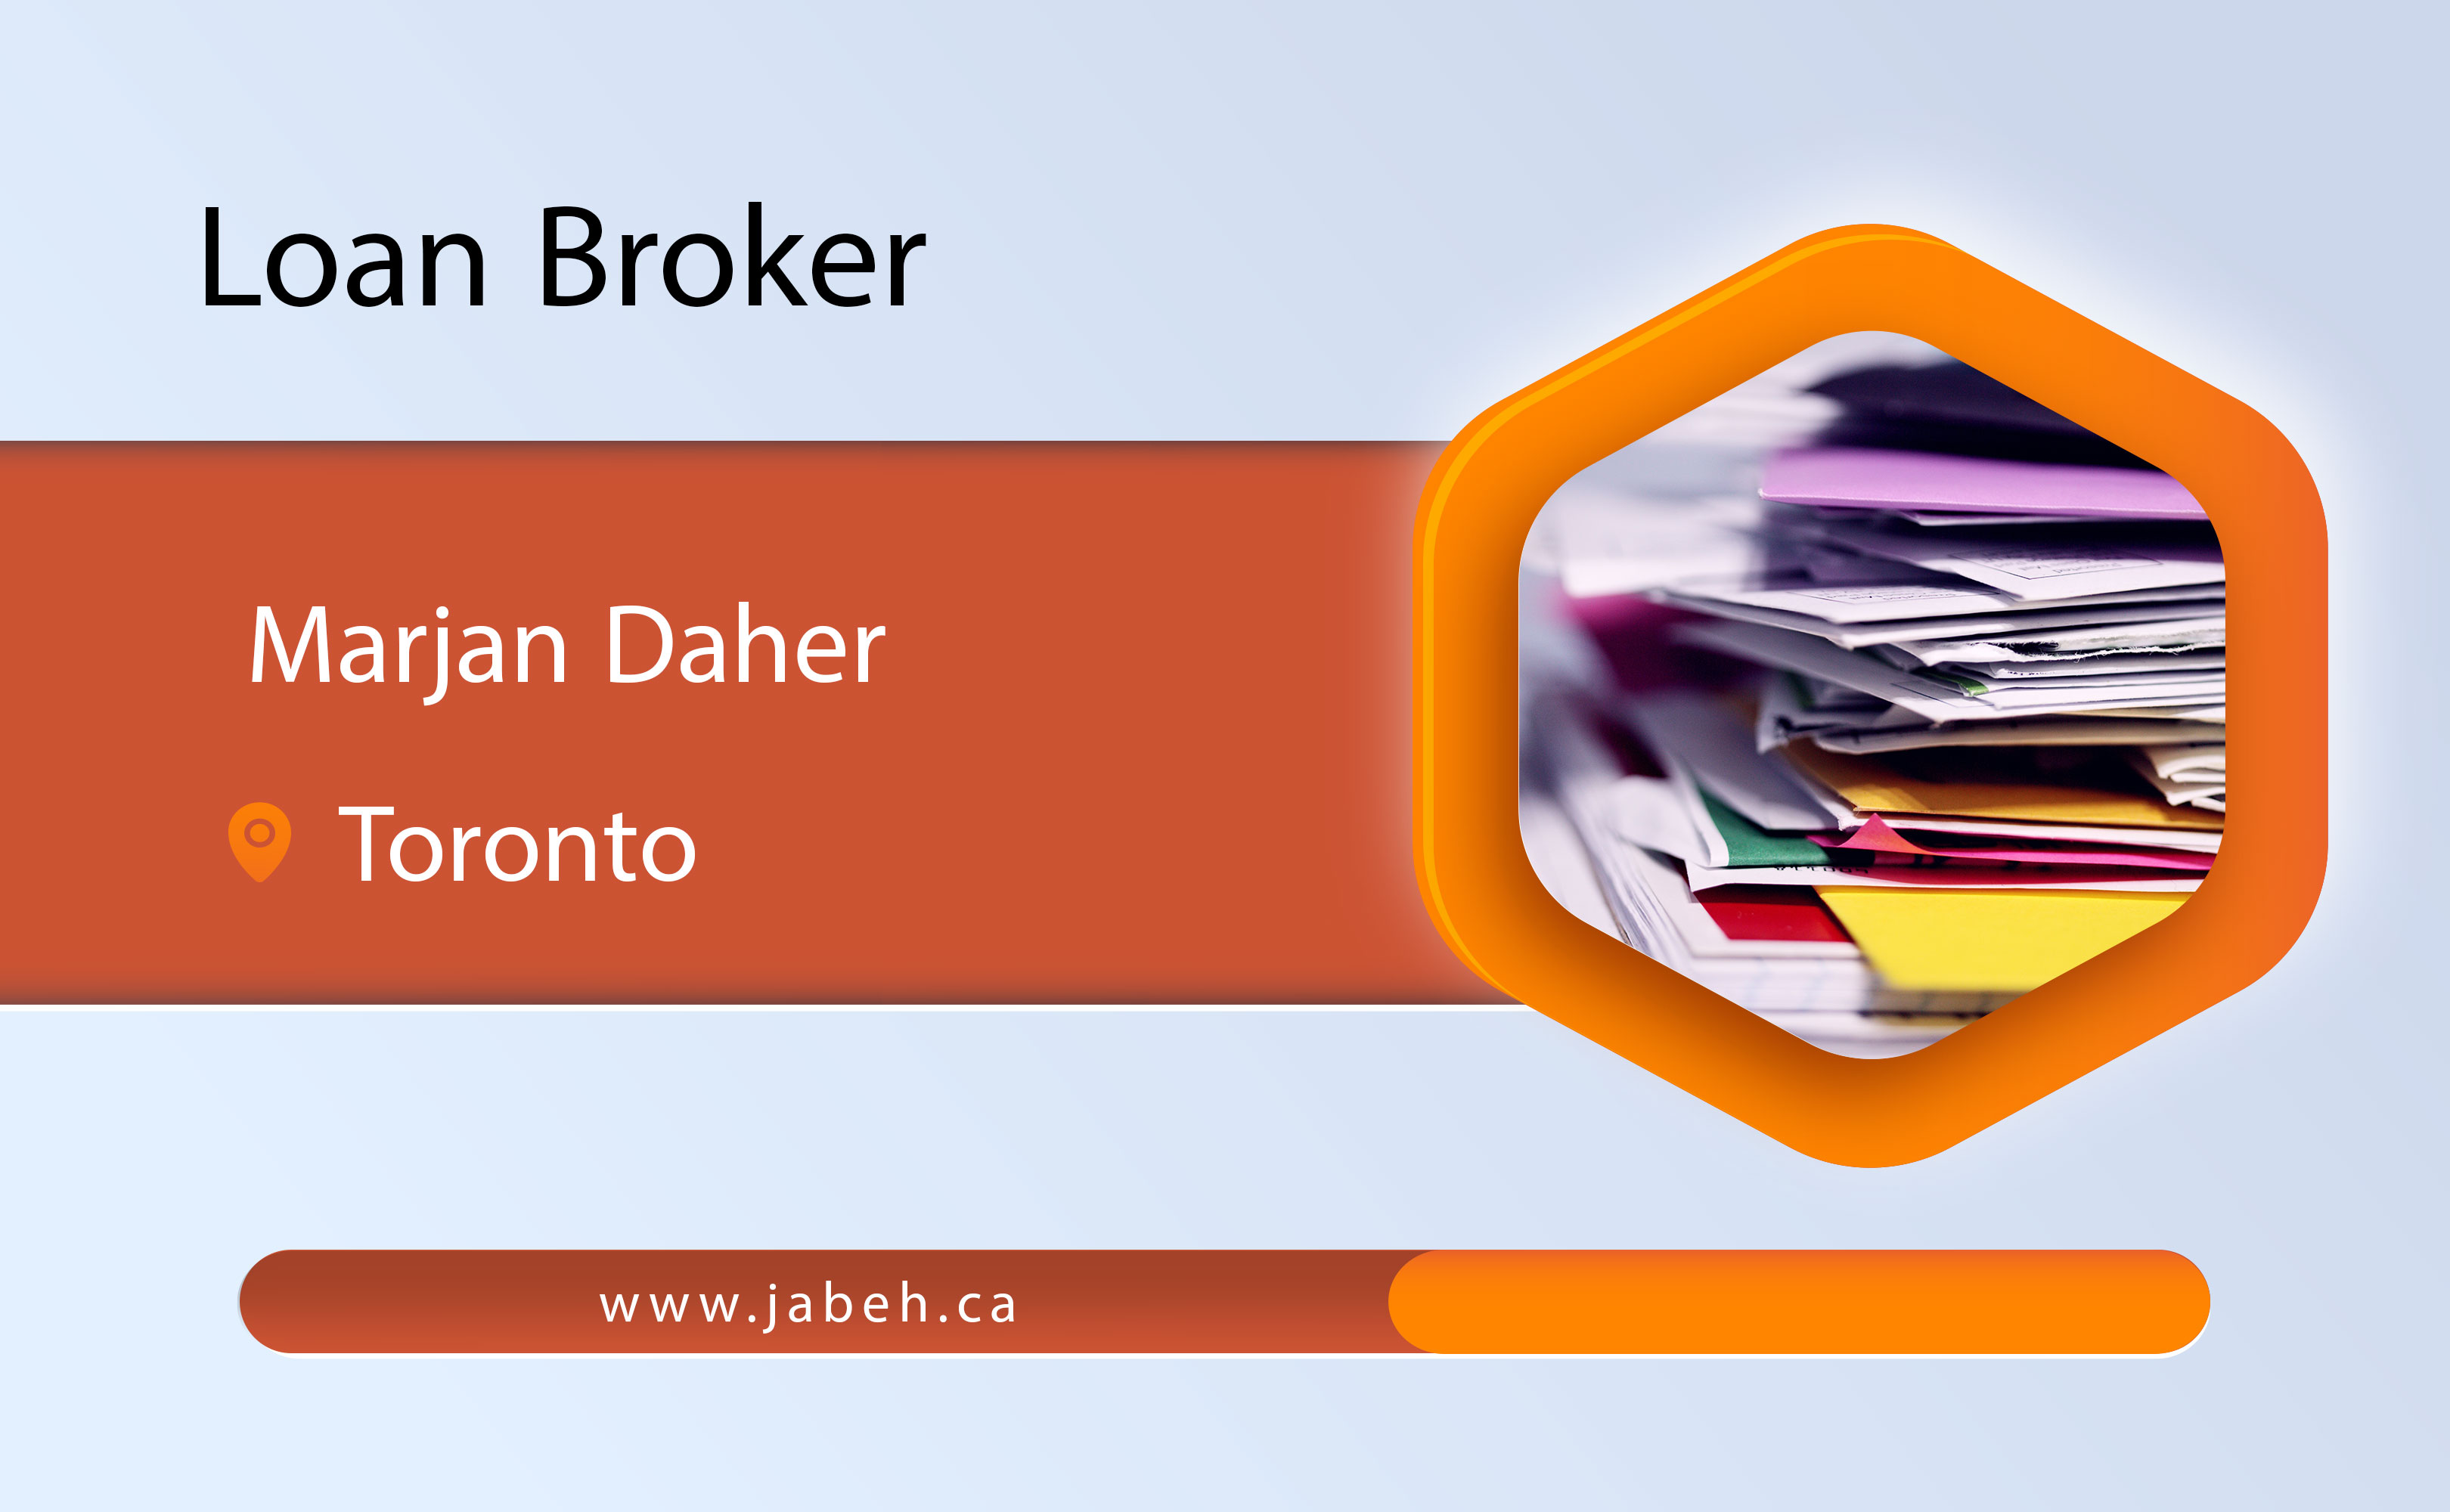 Iranian loan broker Marjan Daher in Toronto